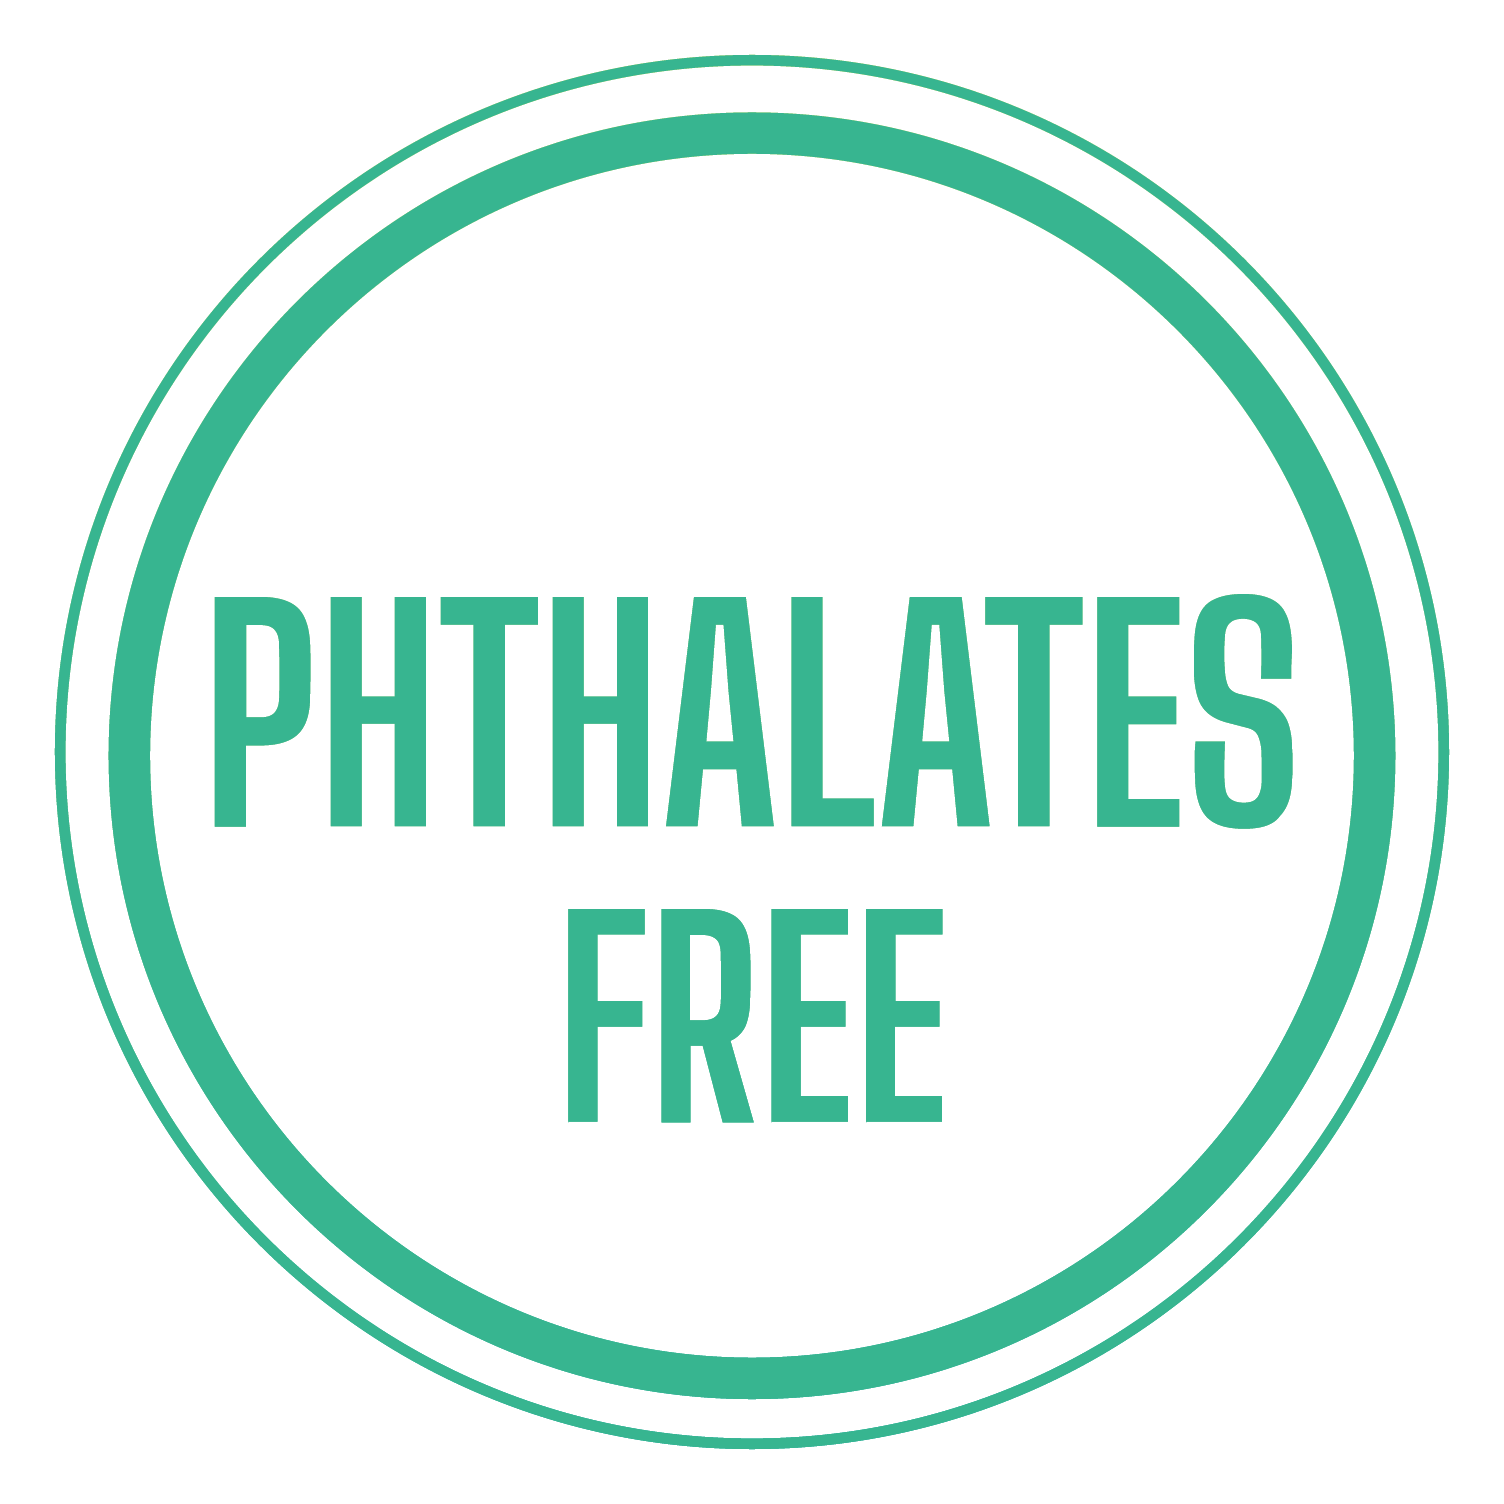 phthalates free